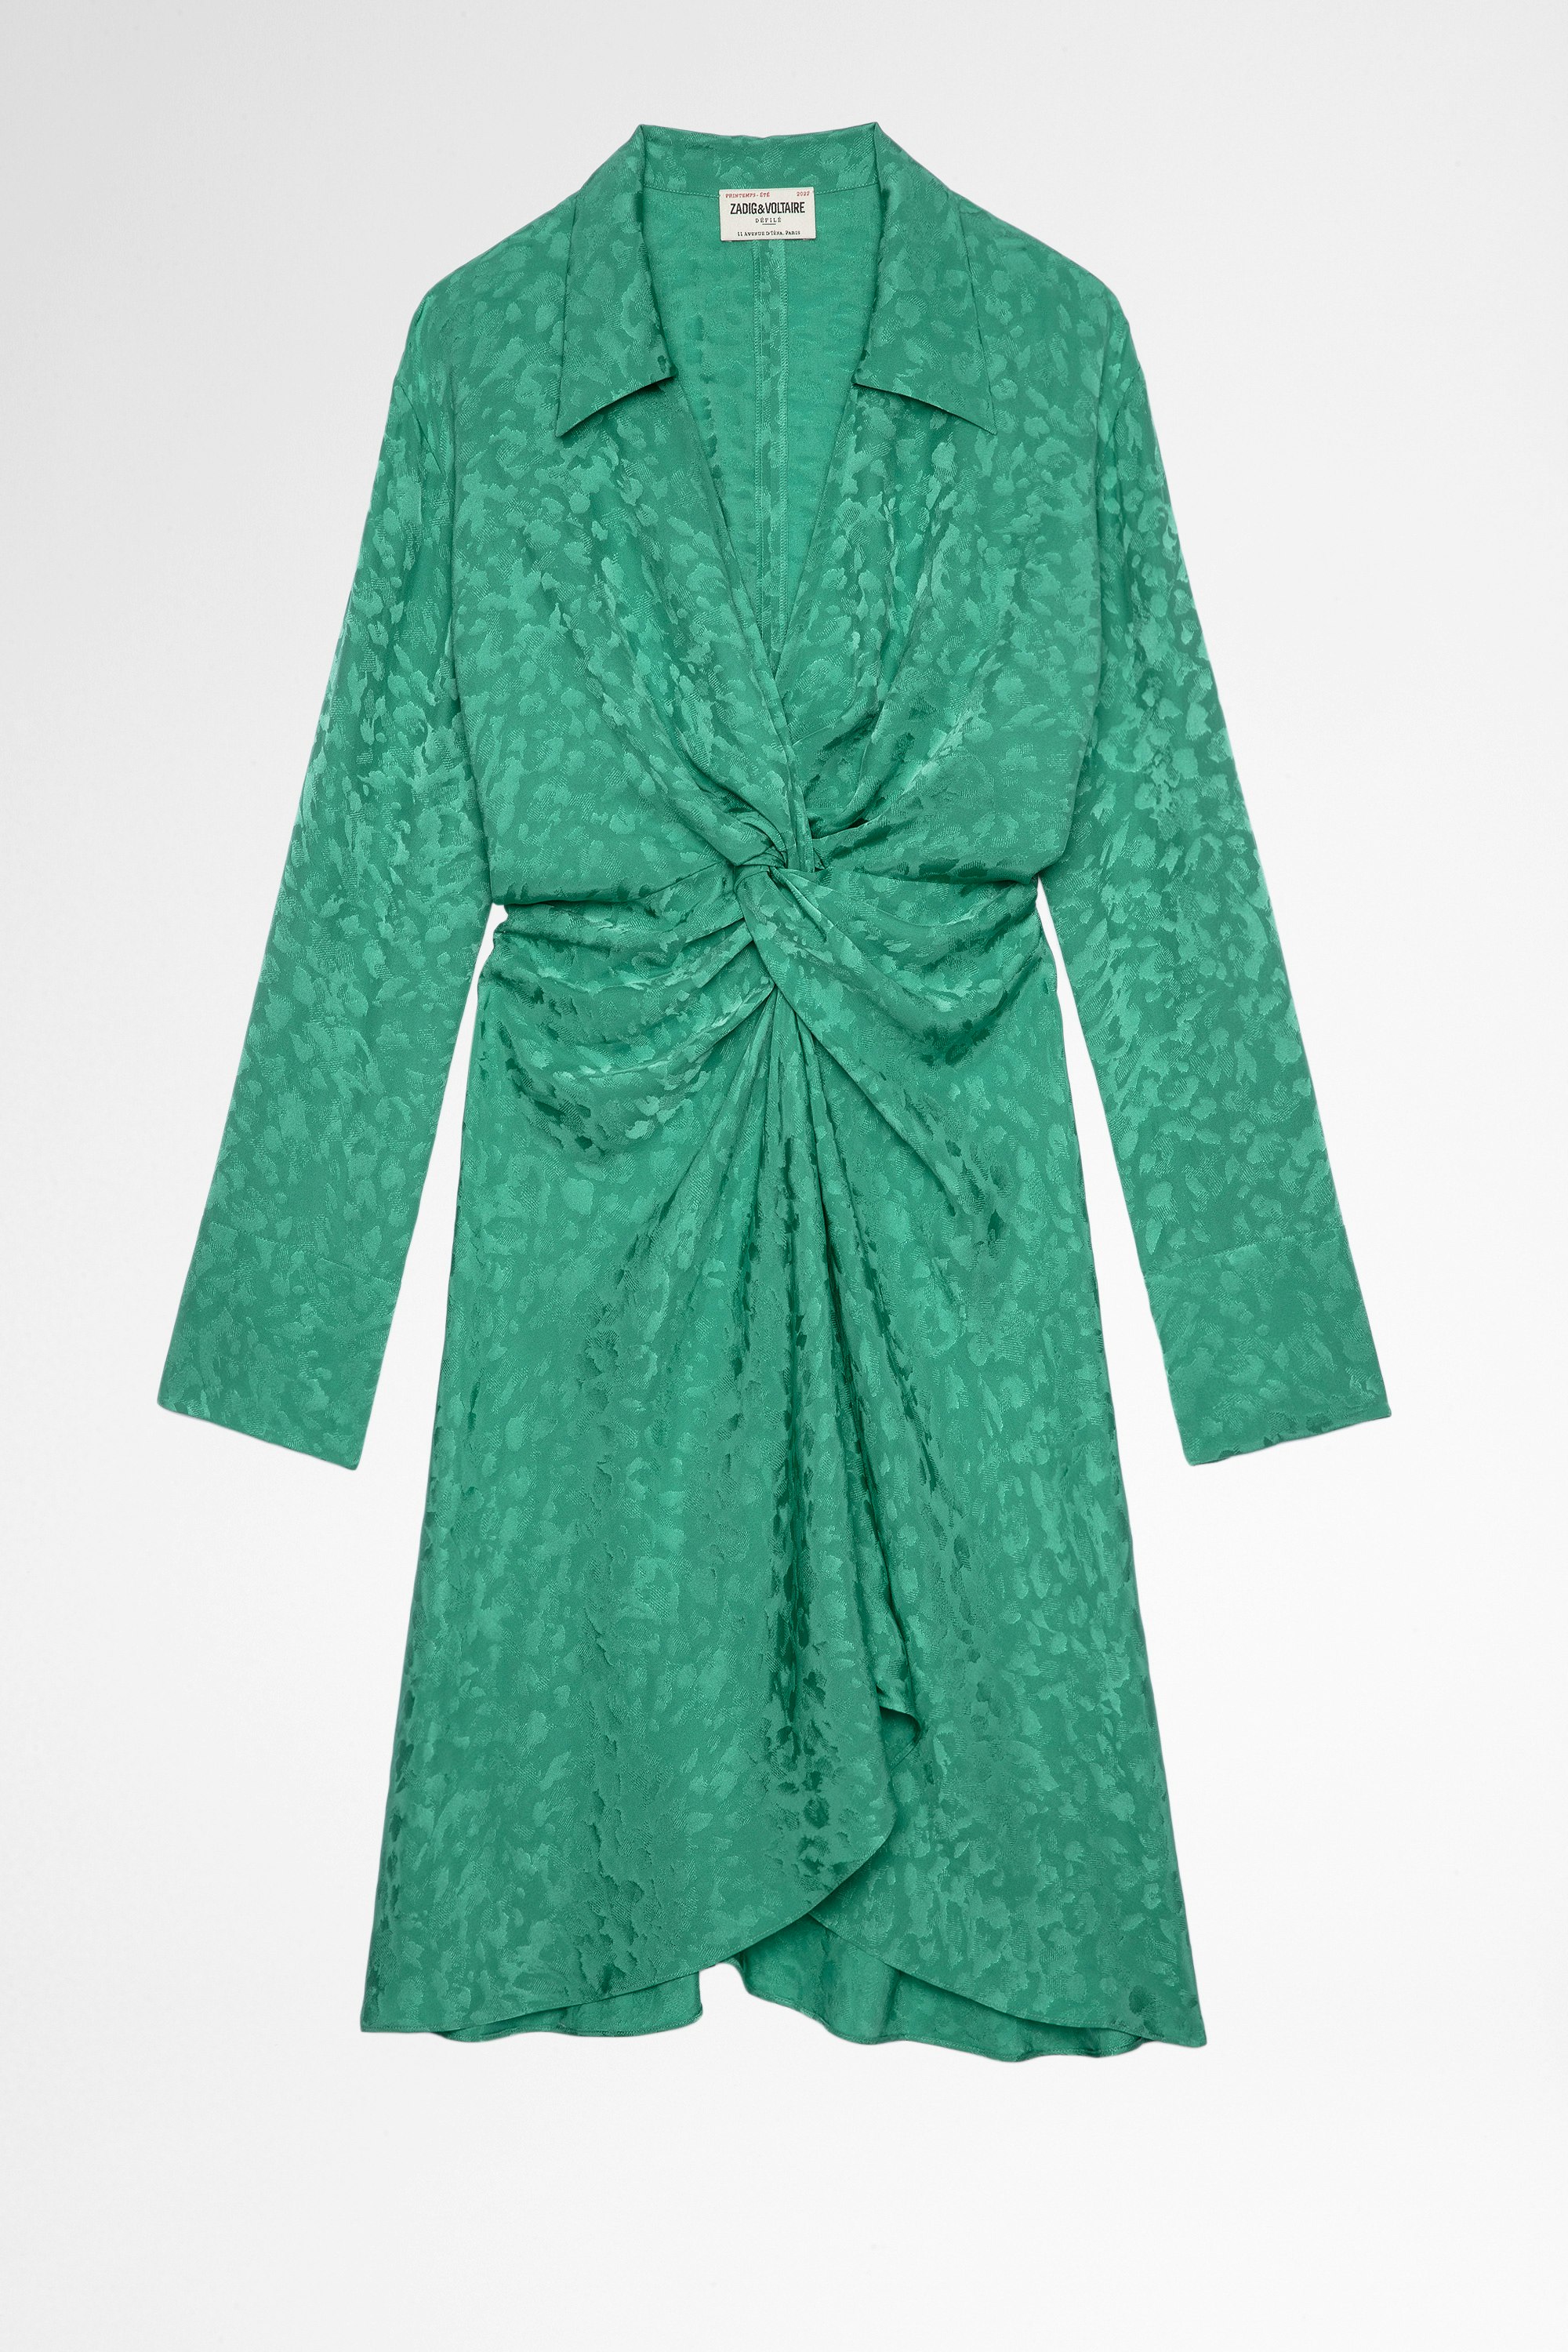 Rozo Silk Dress Women's draped dress in leopard print silk jacquard